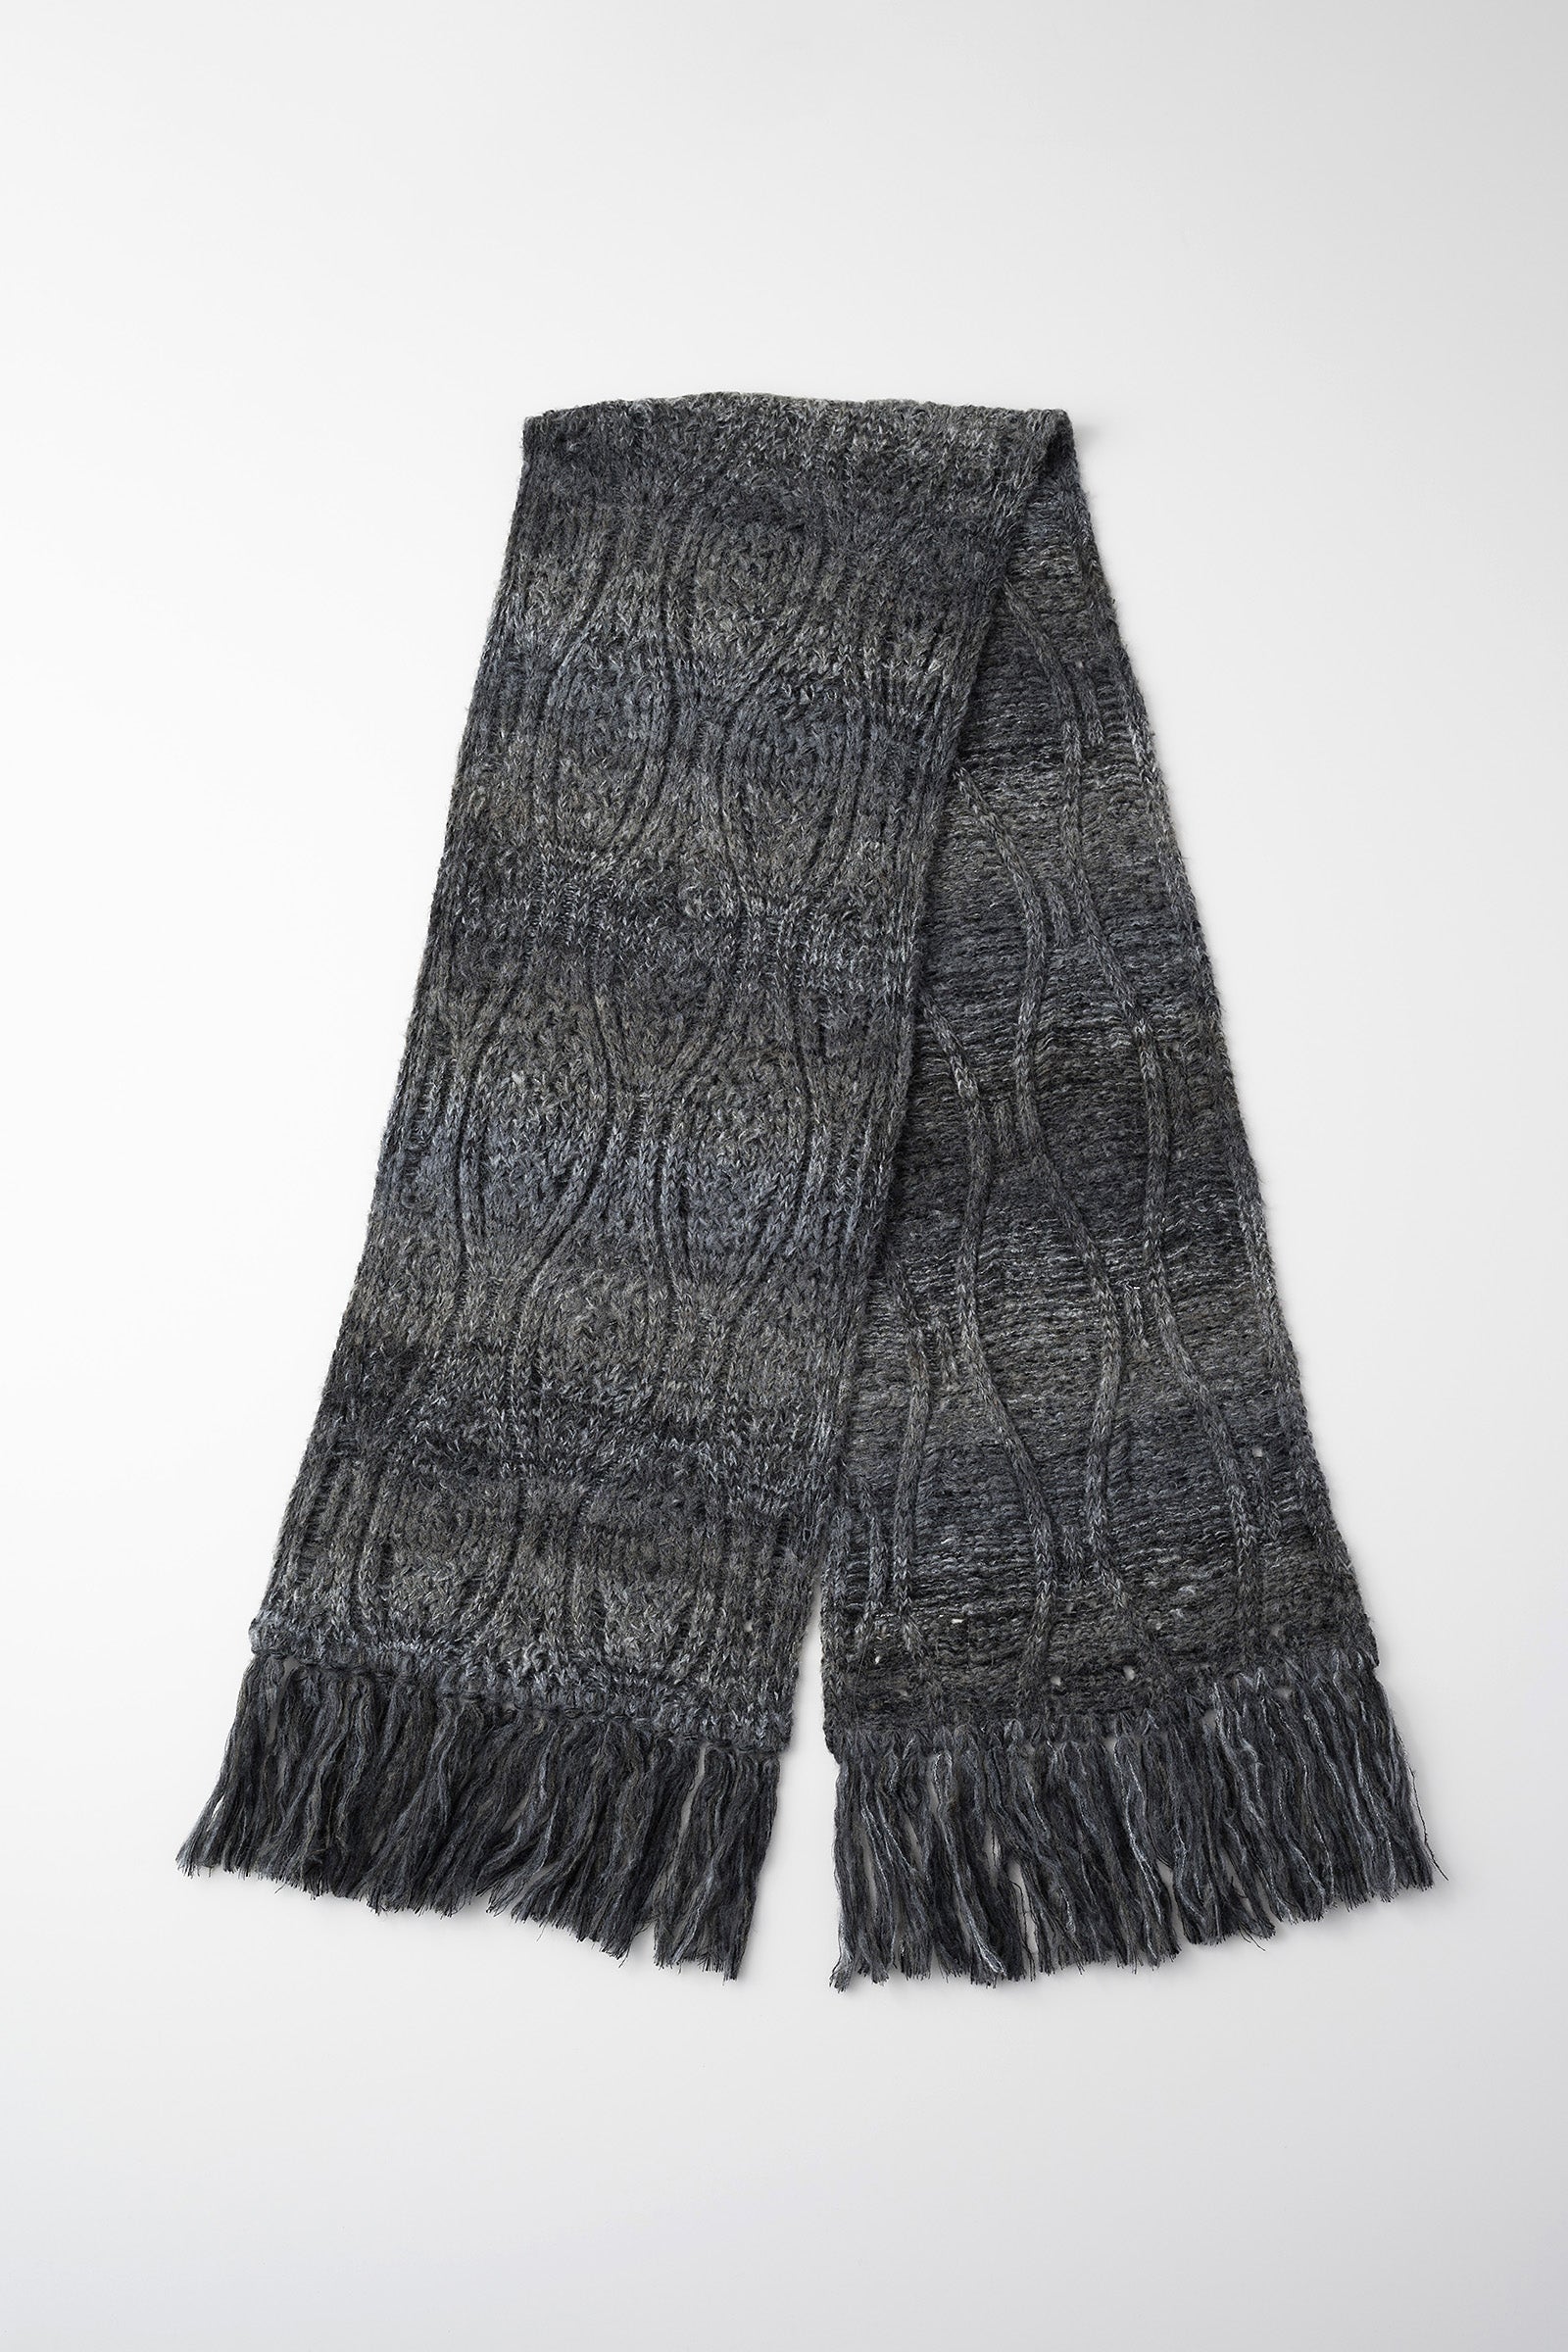 Hazy knit Scarf (Black)